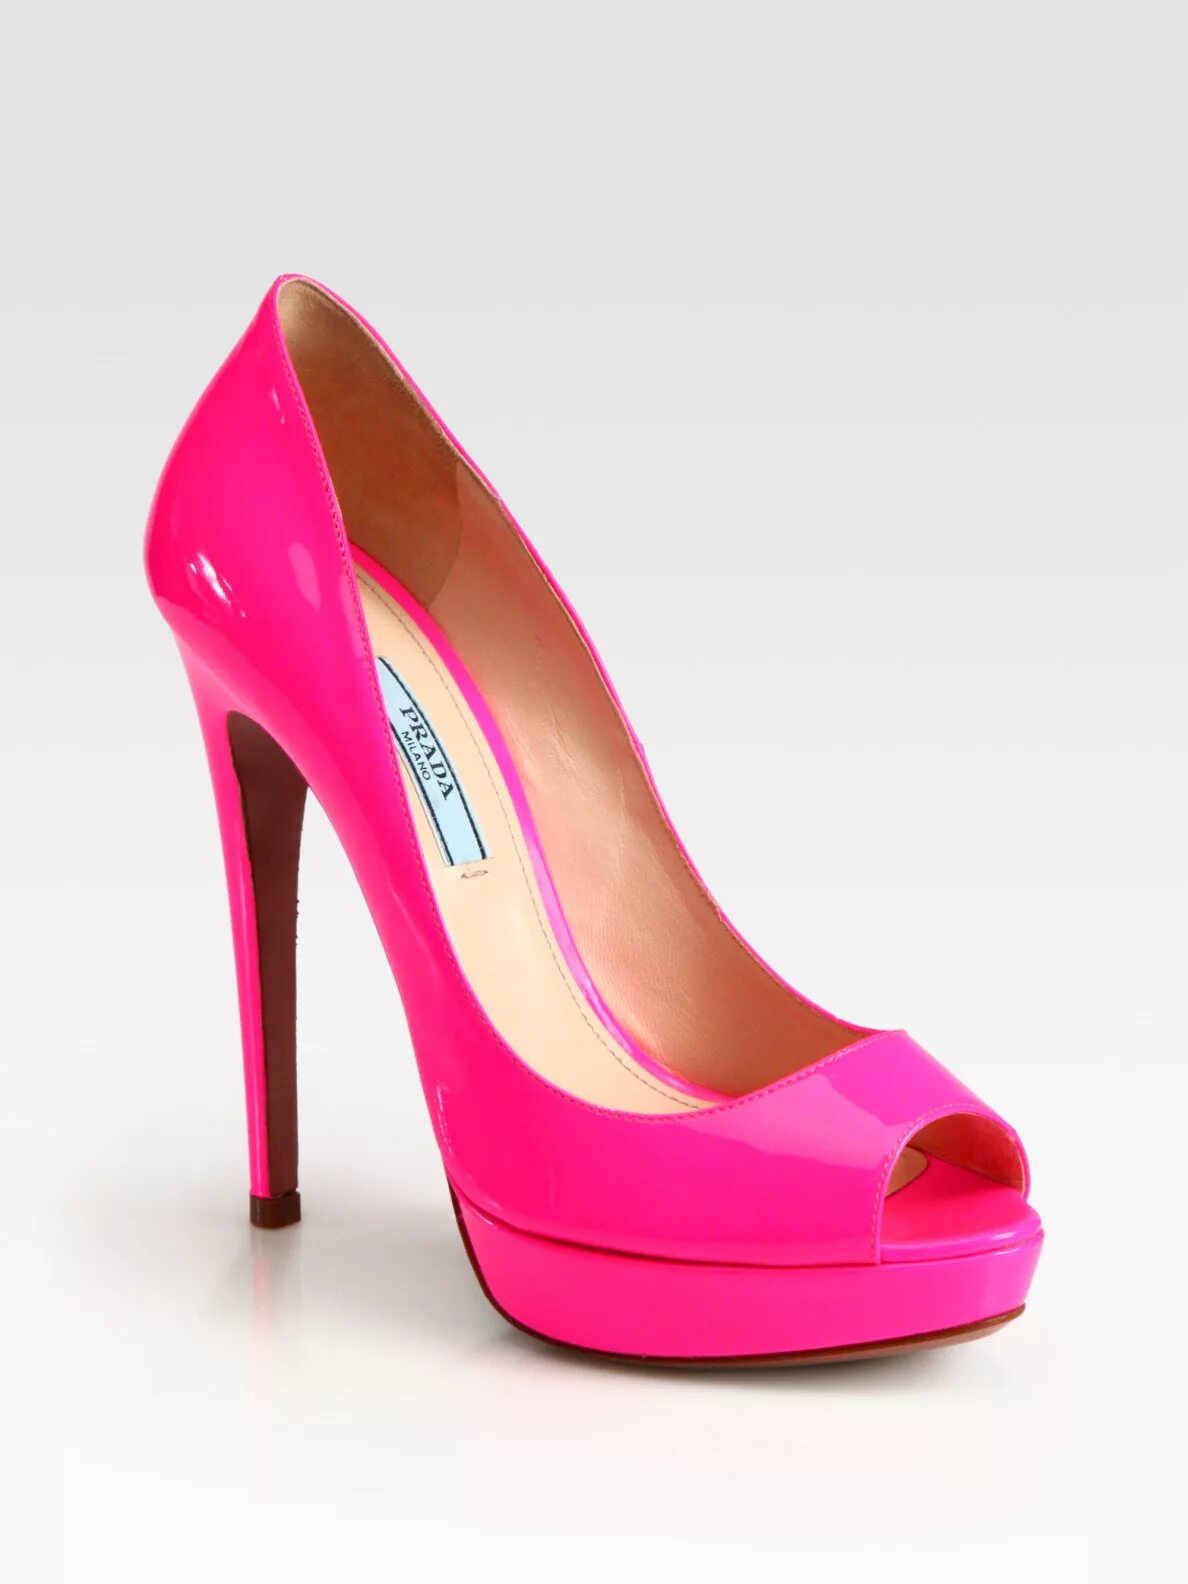 Peep Toe туфли Prada. Pink Heels Prada. Prada Pink Shoes. Туфли розовые. Розовые туфли есть